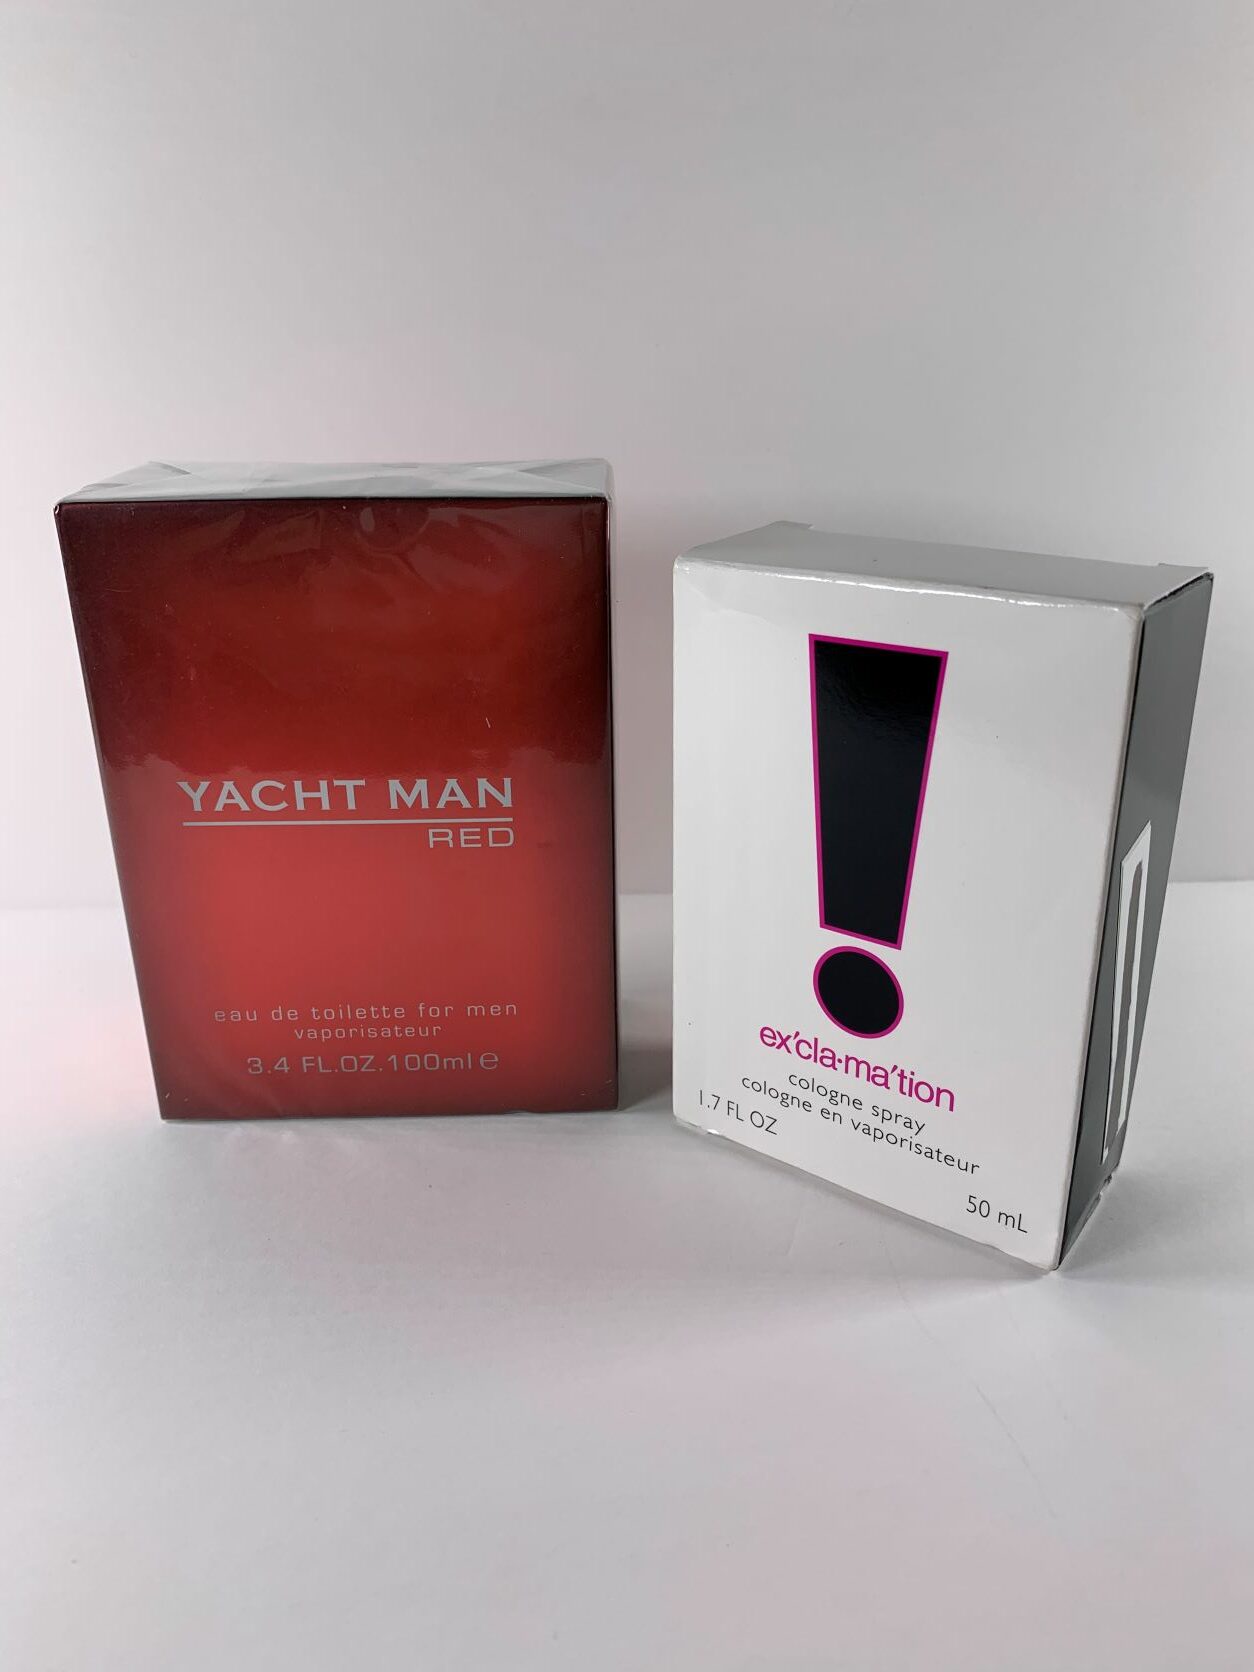 valor perfume yacht man